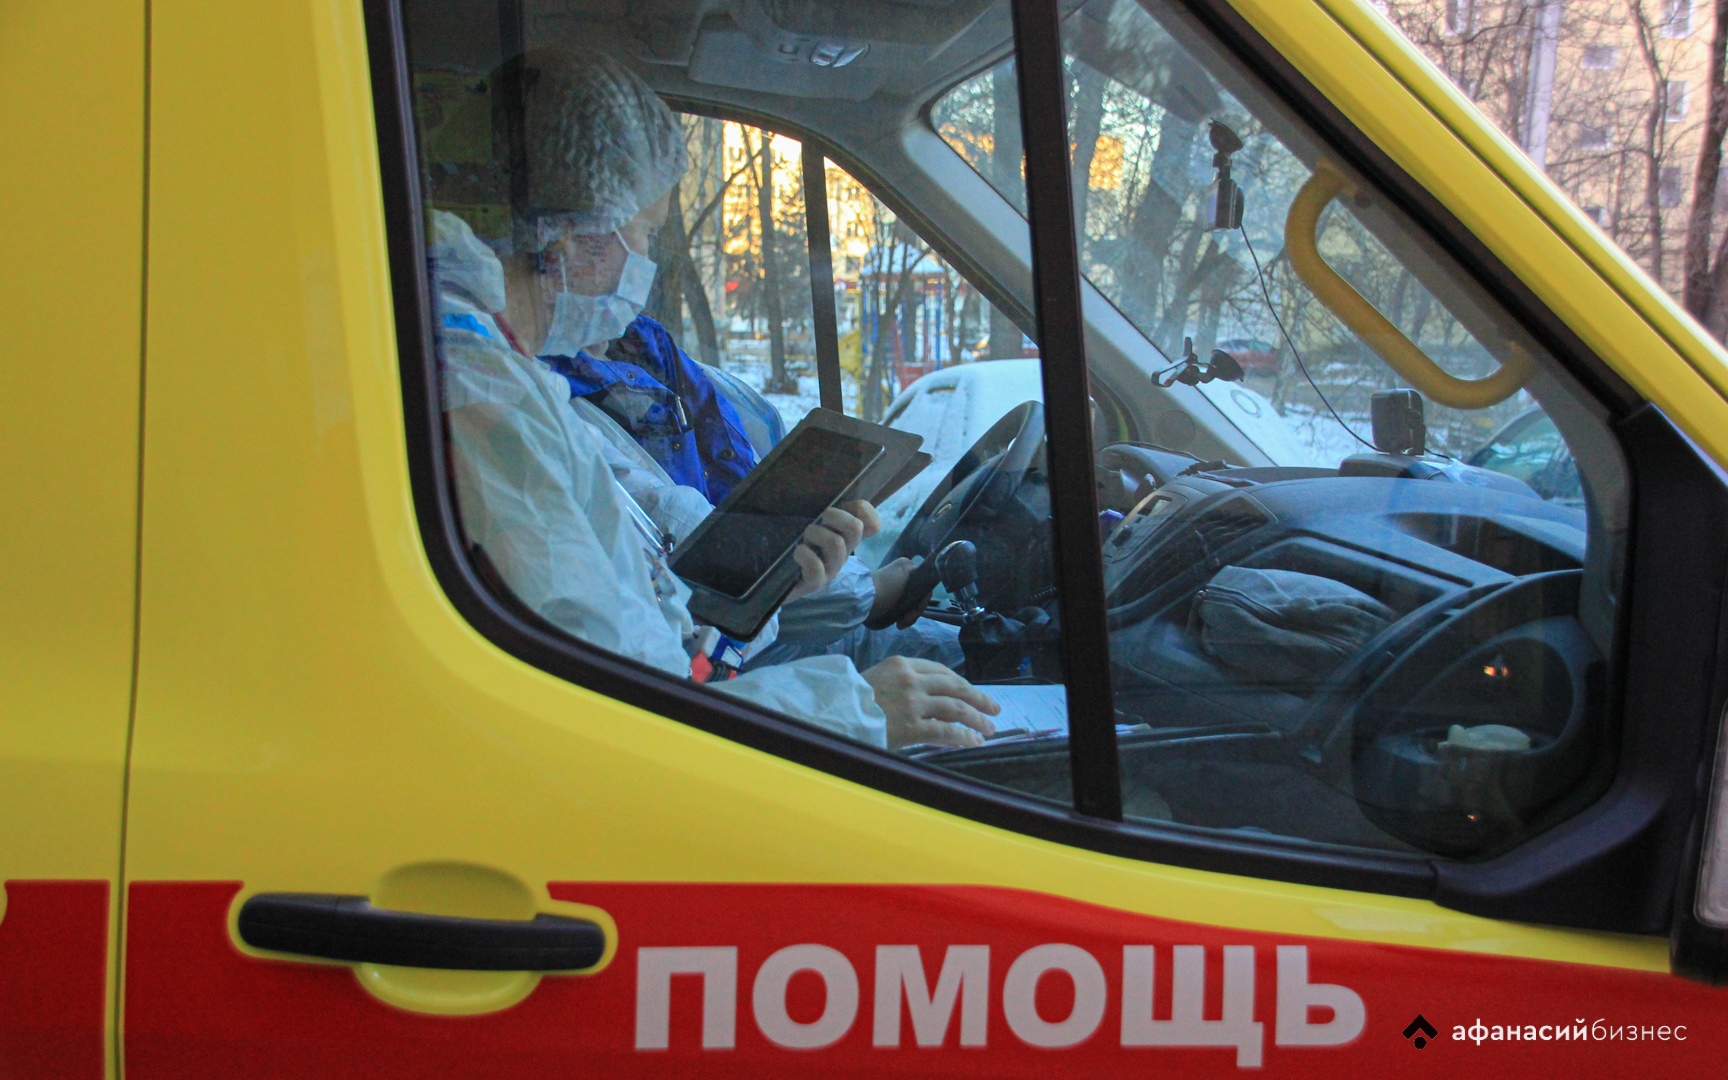 154 автомобиля скорой помощи пополнили автопарк Тверской области